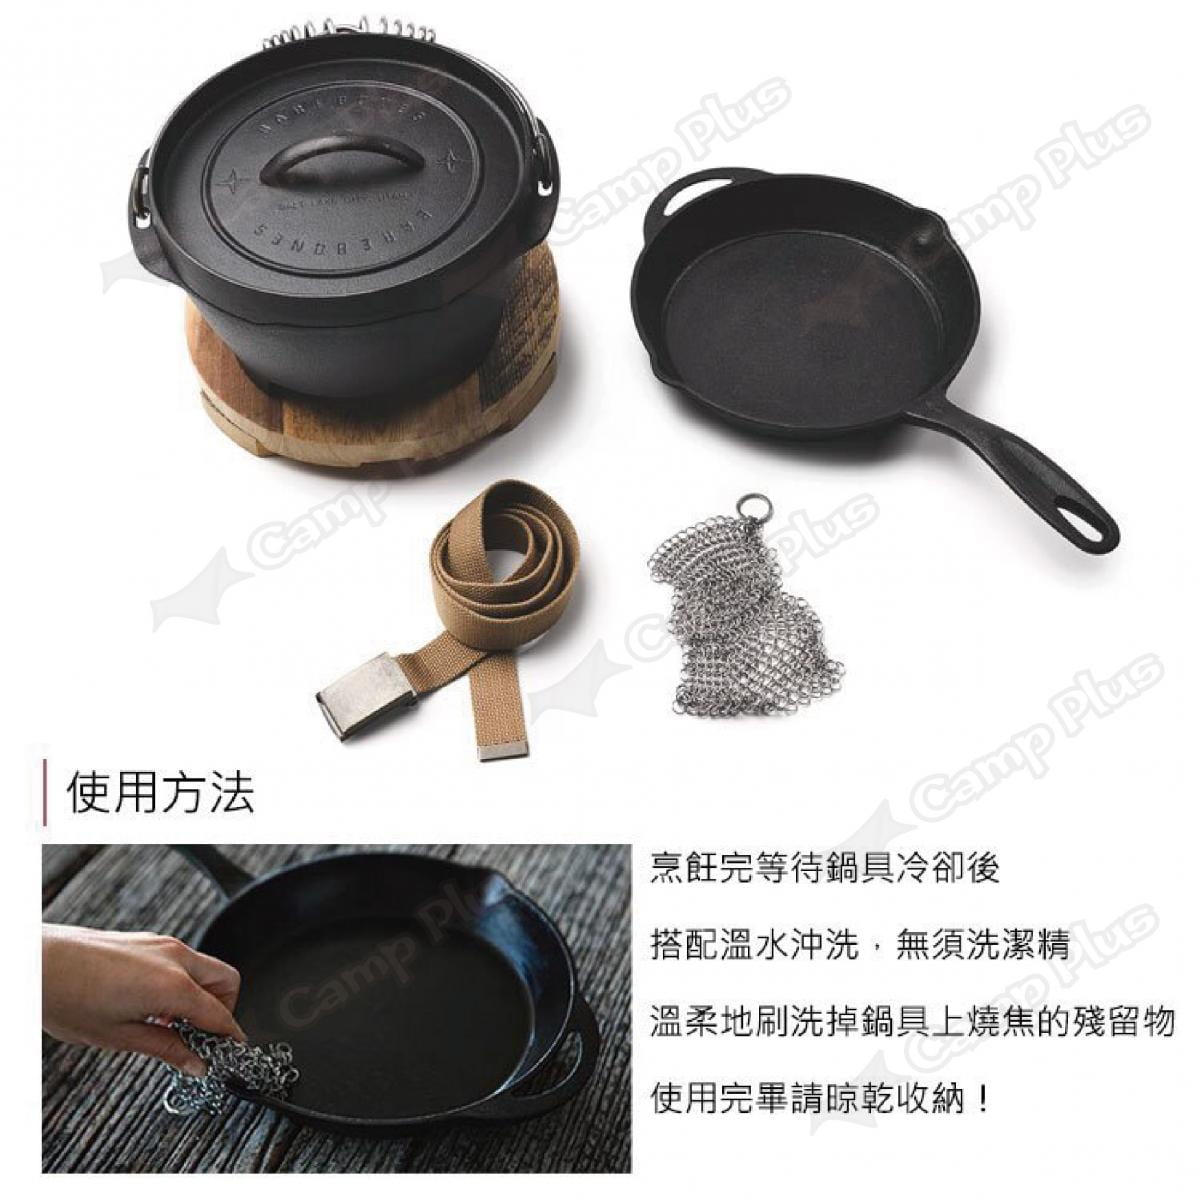 【Barebones】鑄鐵荷蘭鍋清潔鍋網 (悠遊戶外) 2